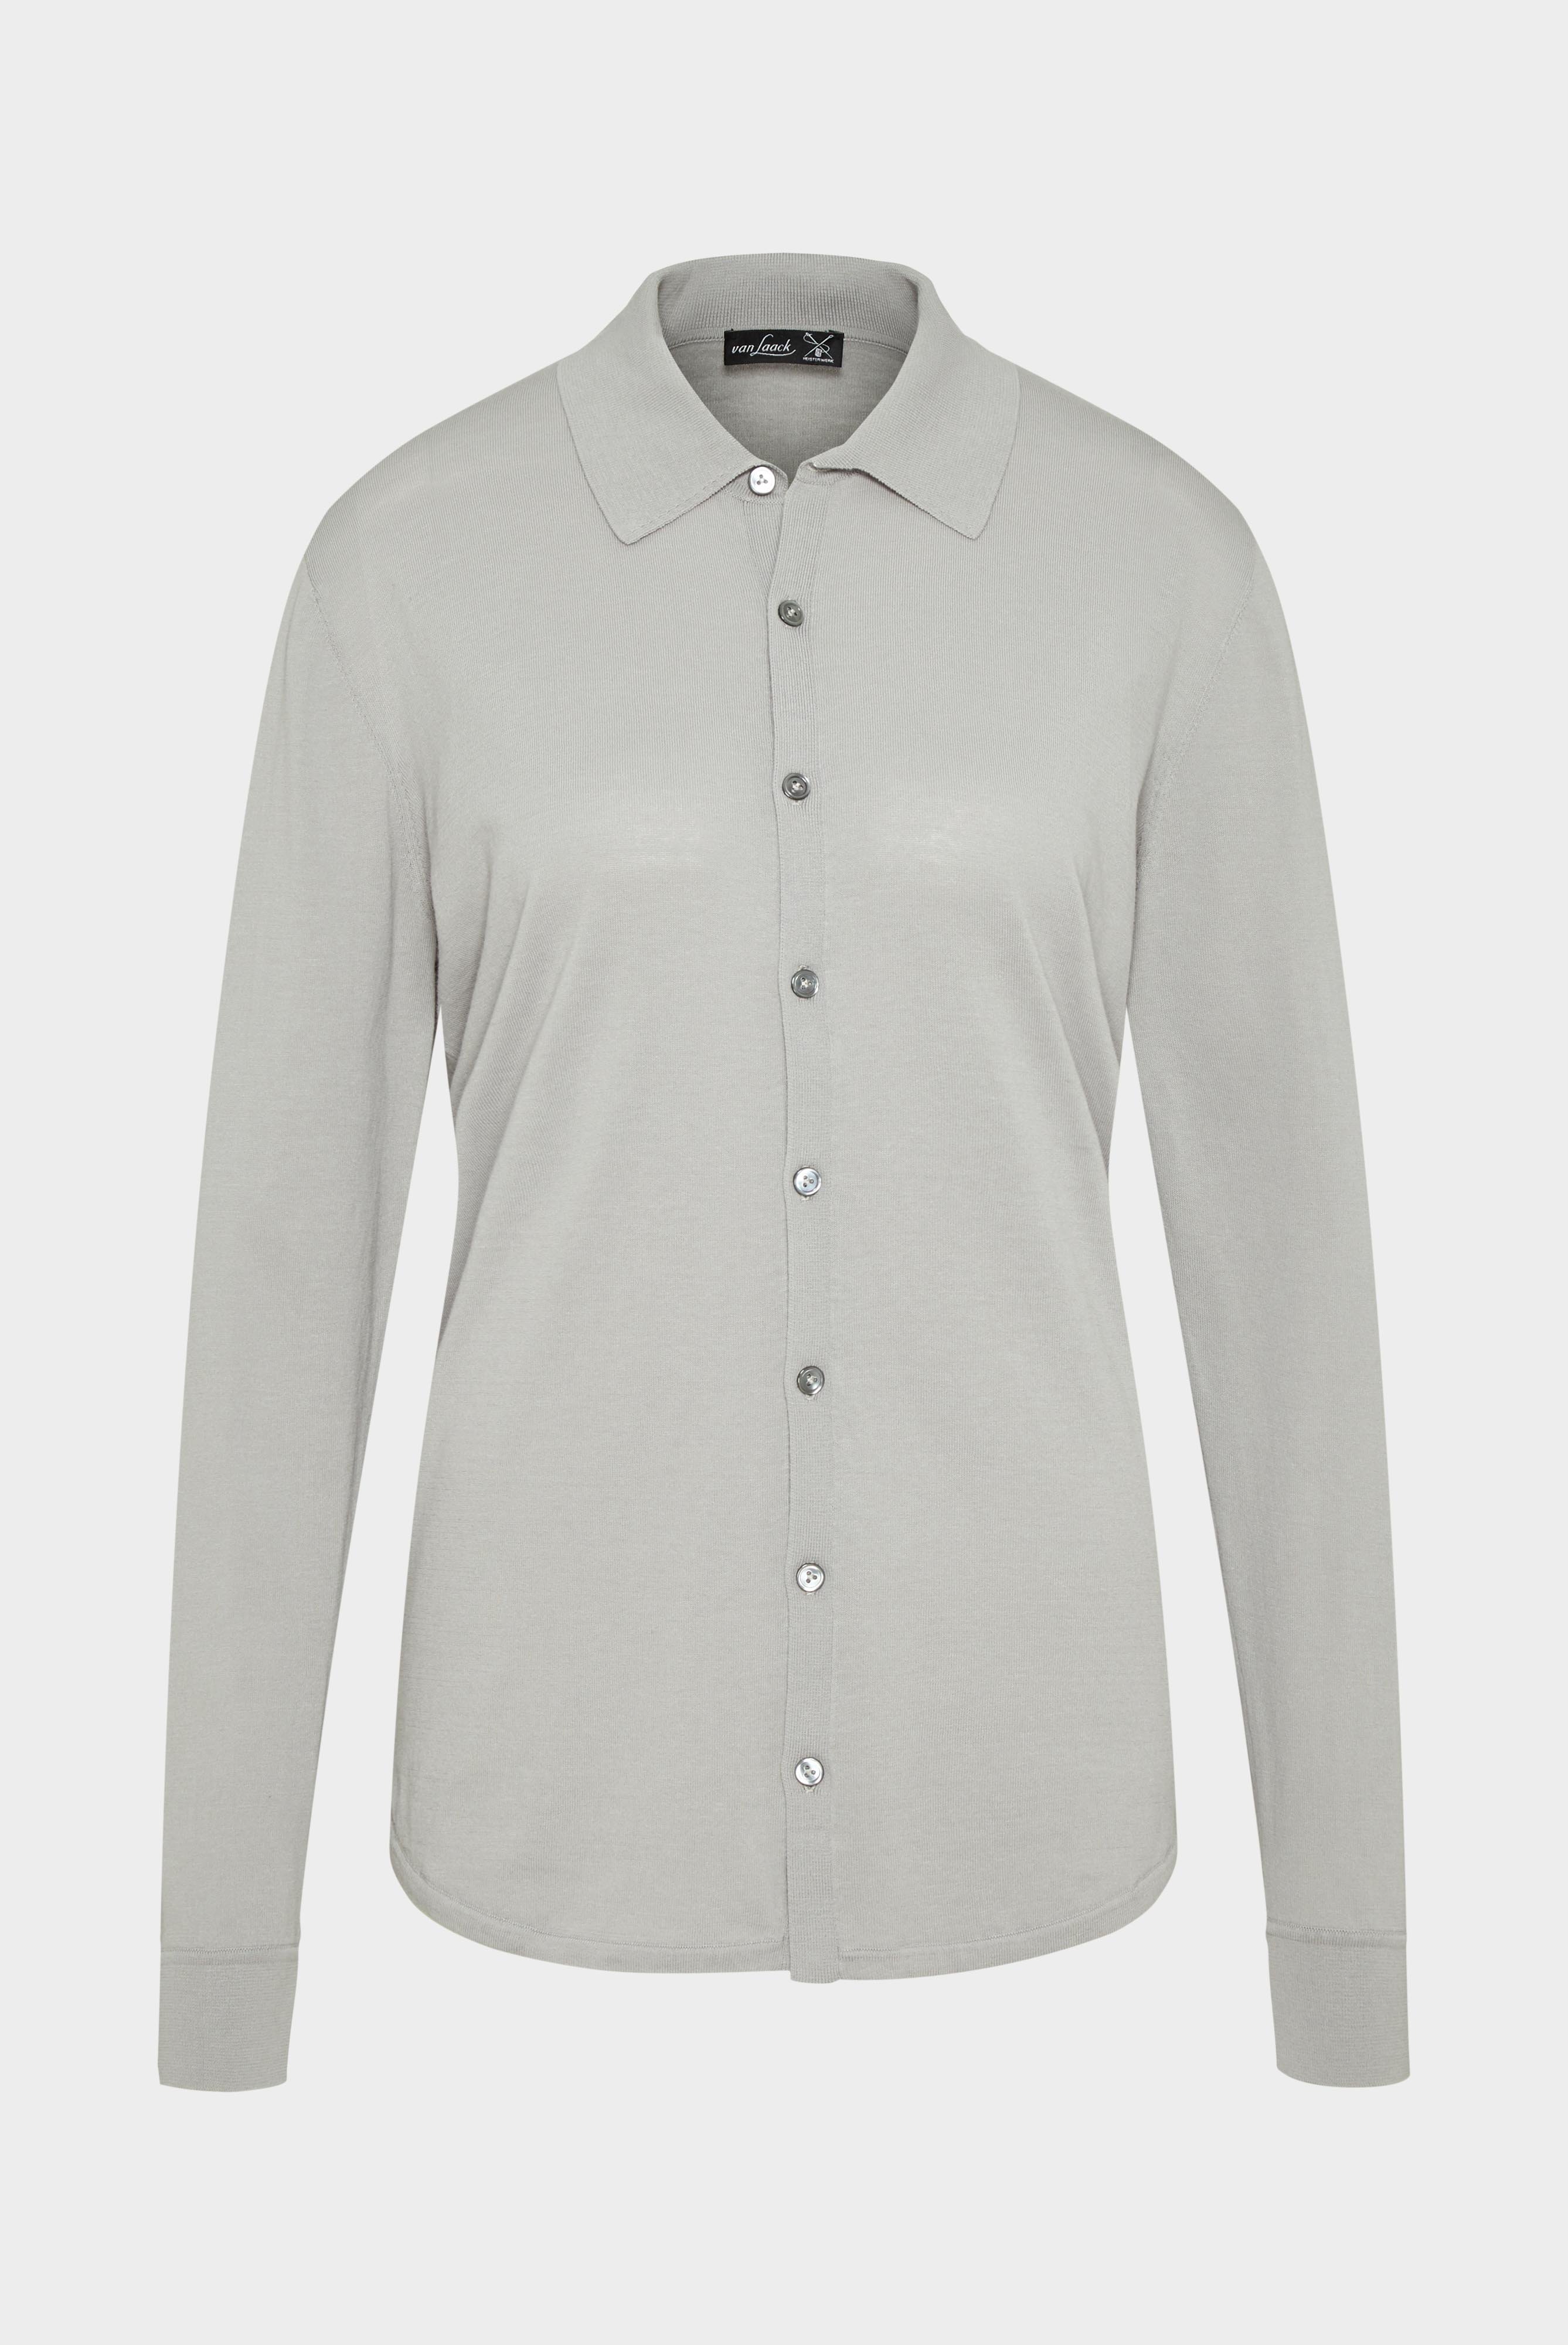 Bügelleichte Hemden+Strick Hemd aus Air Cotton+82.8611..S00174.050.X3L